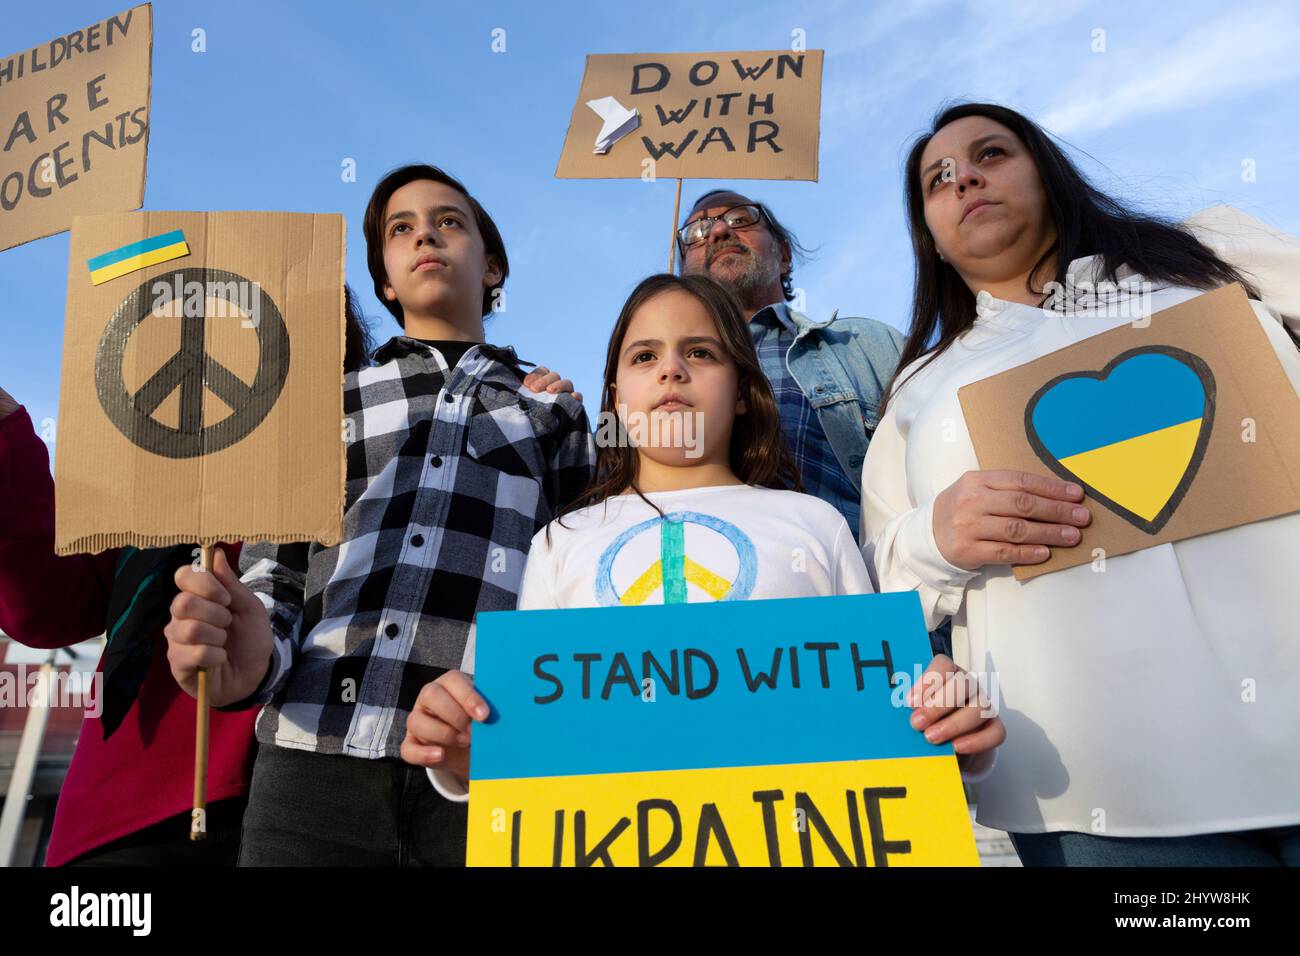 Un groupe de manifestants pour la paix proteste contre l'invasion russe. Ils présentent des affiches et des drapeaux de la fin de la guerre aux couleurs ukrainiennes. Banque D'Images